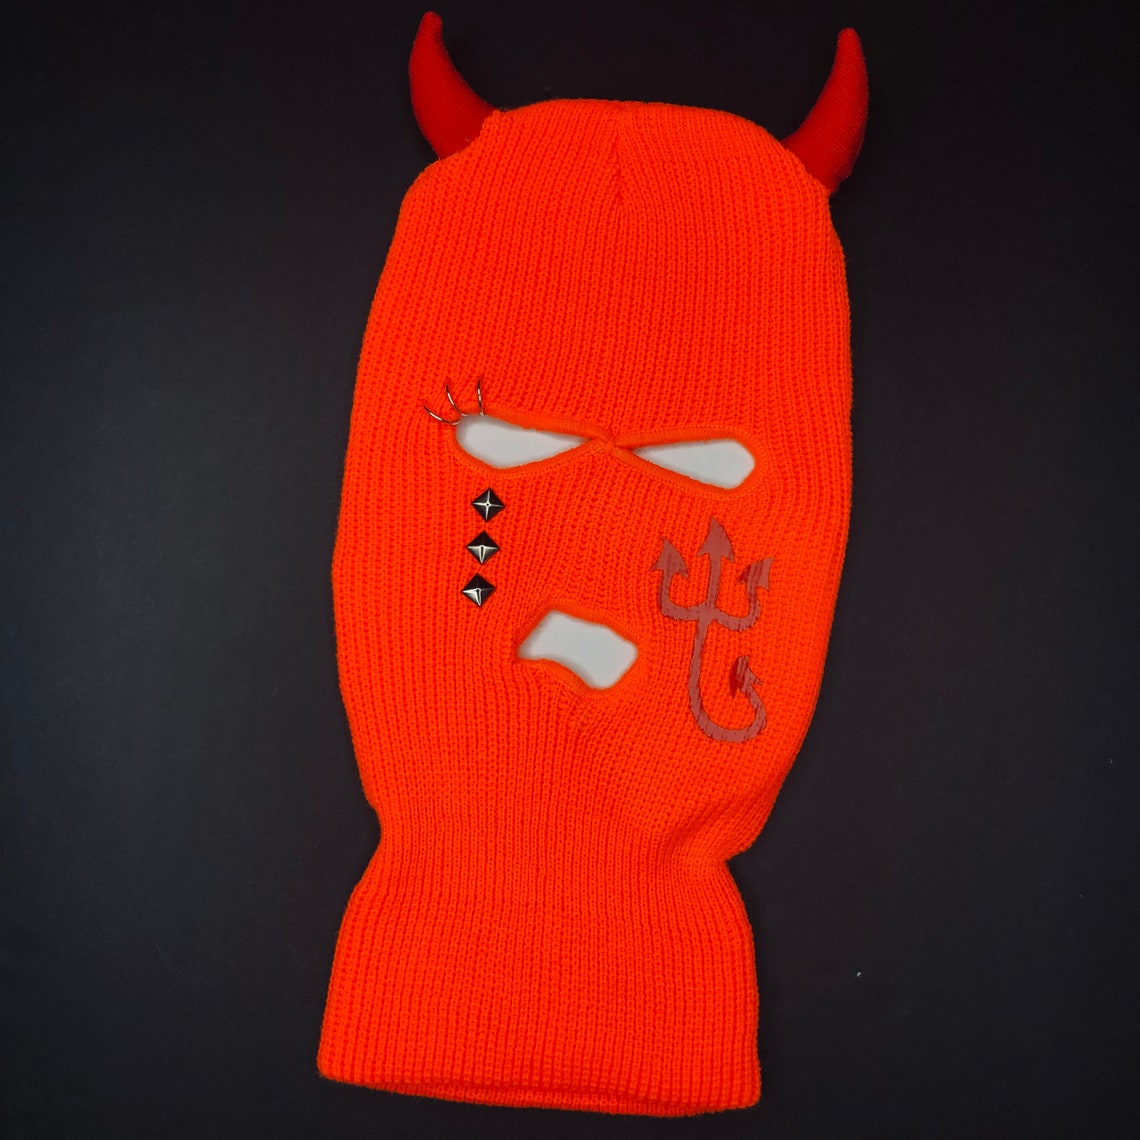 Unisex Super Sick CRY DEVIL Ski Mask Halloween skimask | Etsy